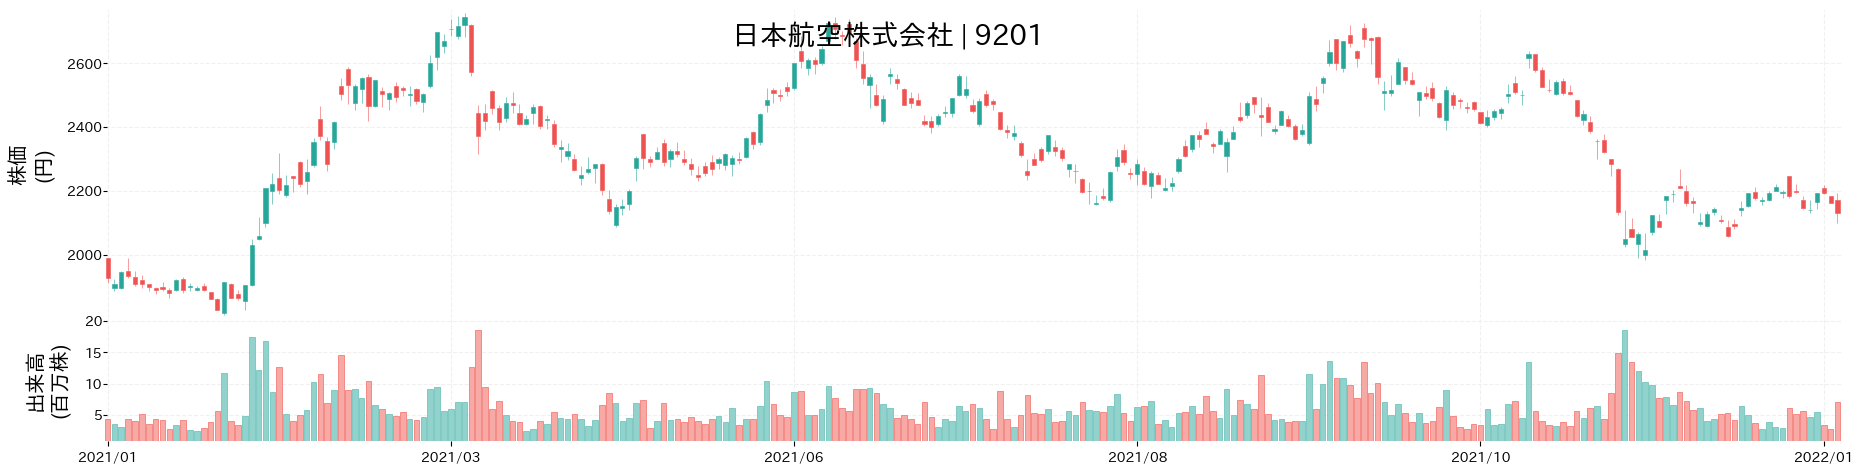 日本航空の株価推移(2021)